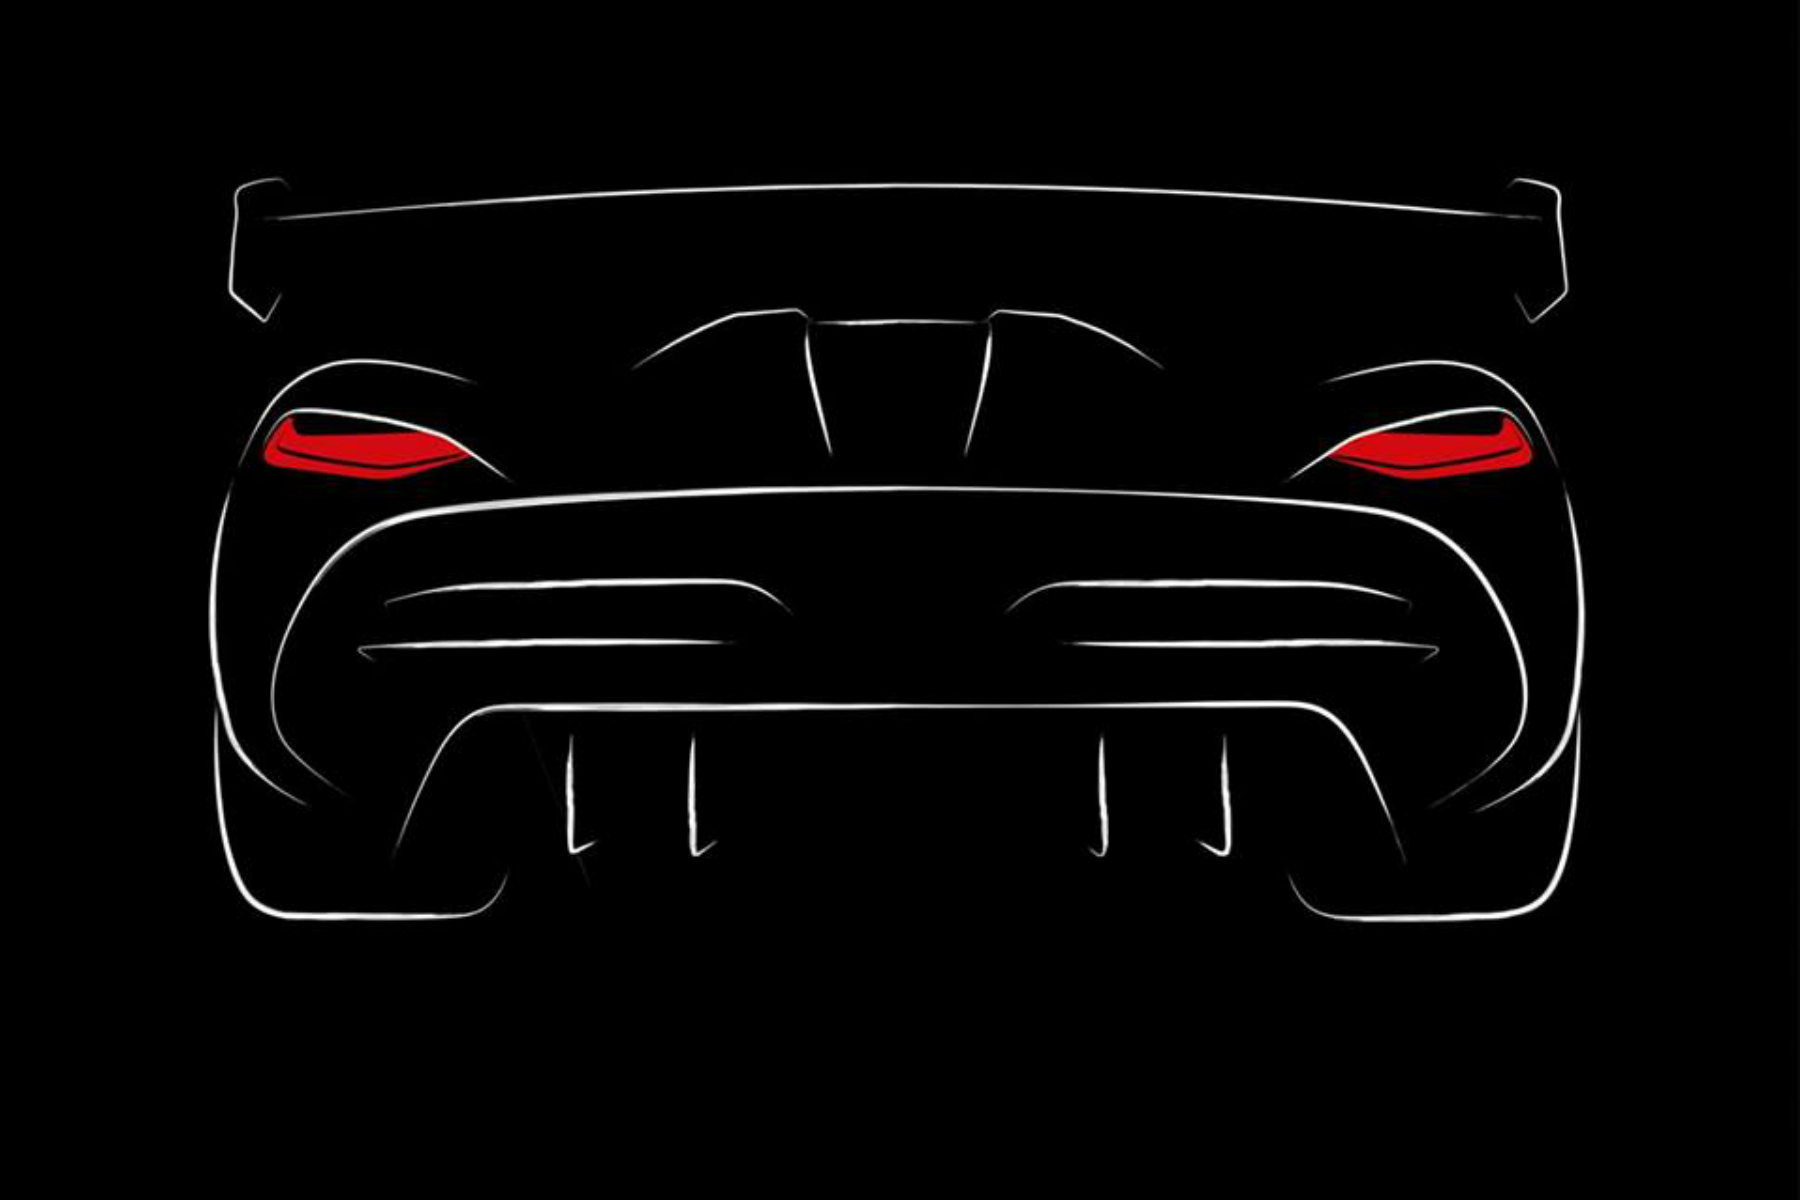 The next Koenigsegg